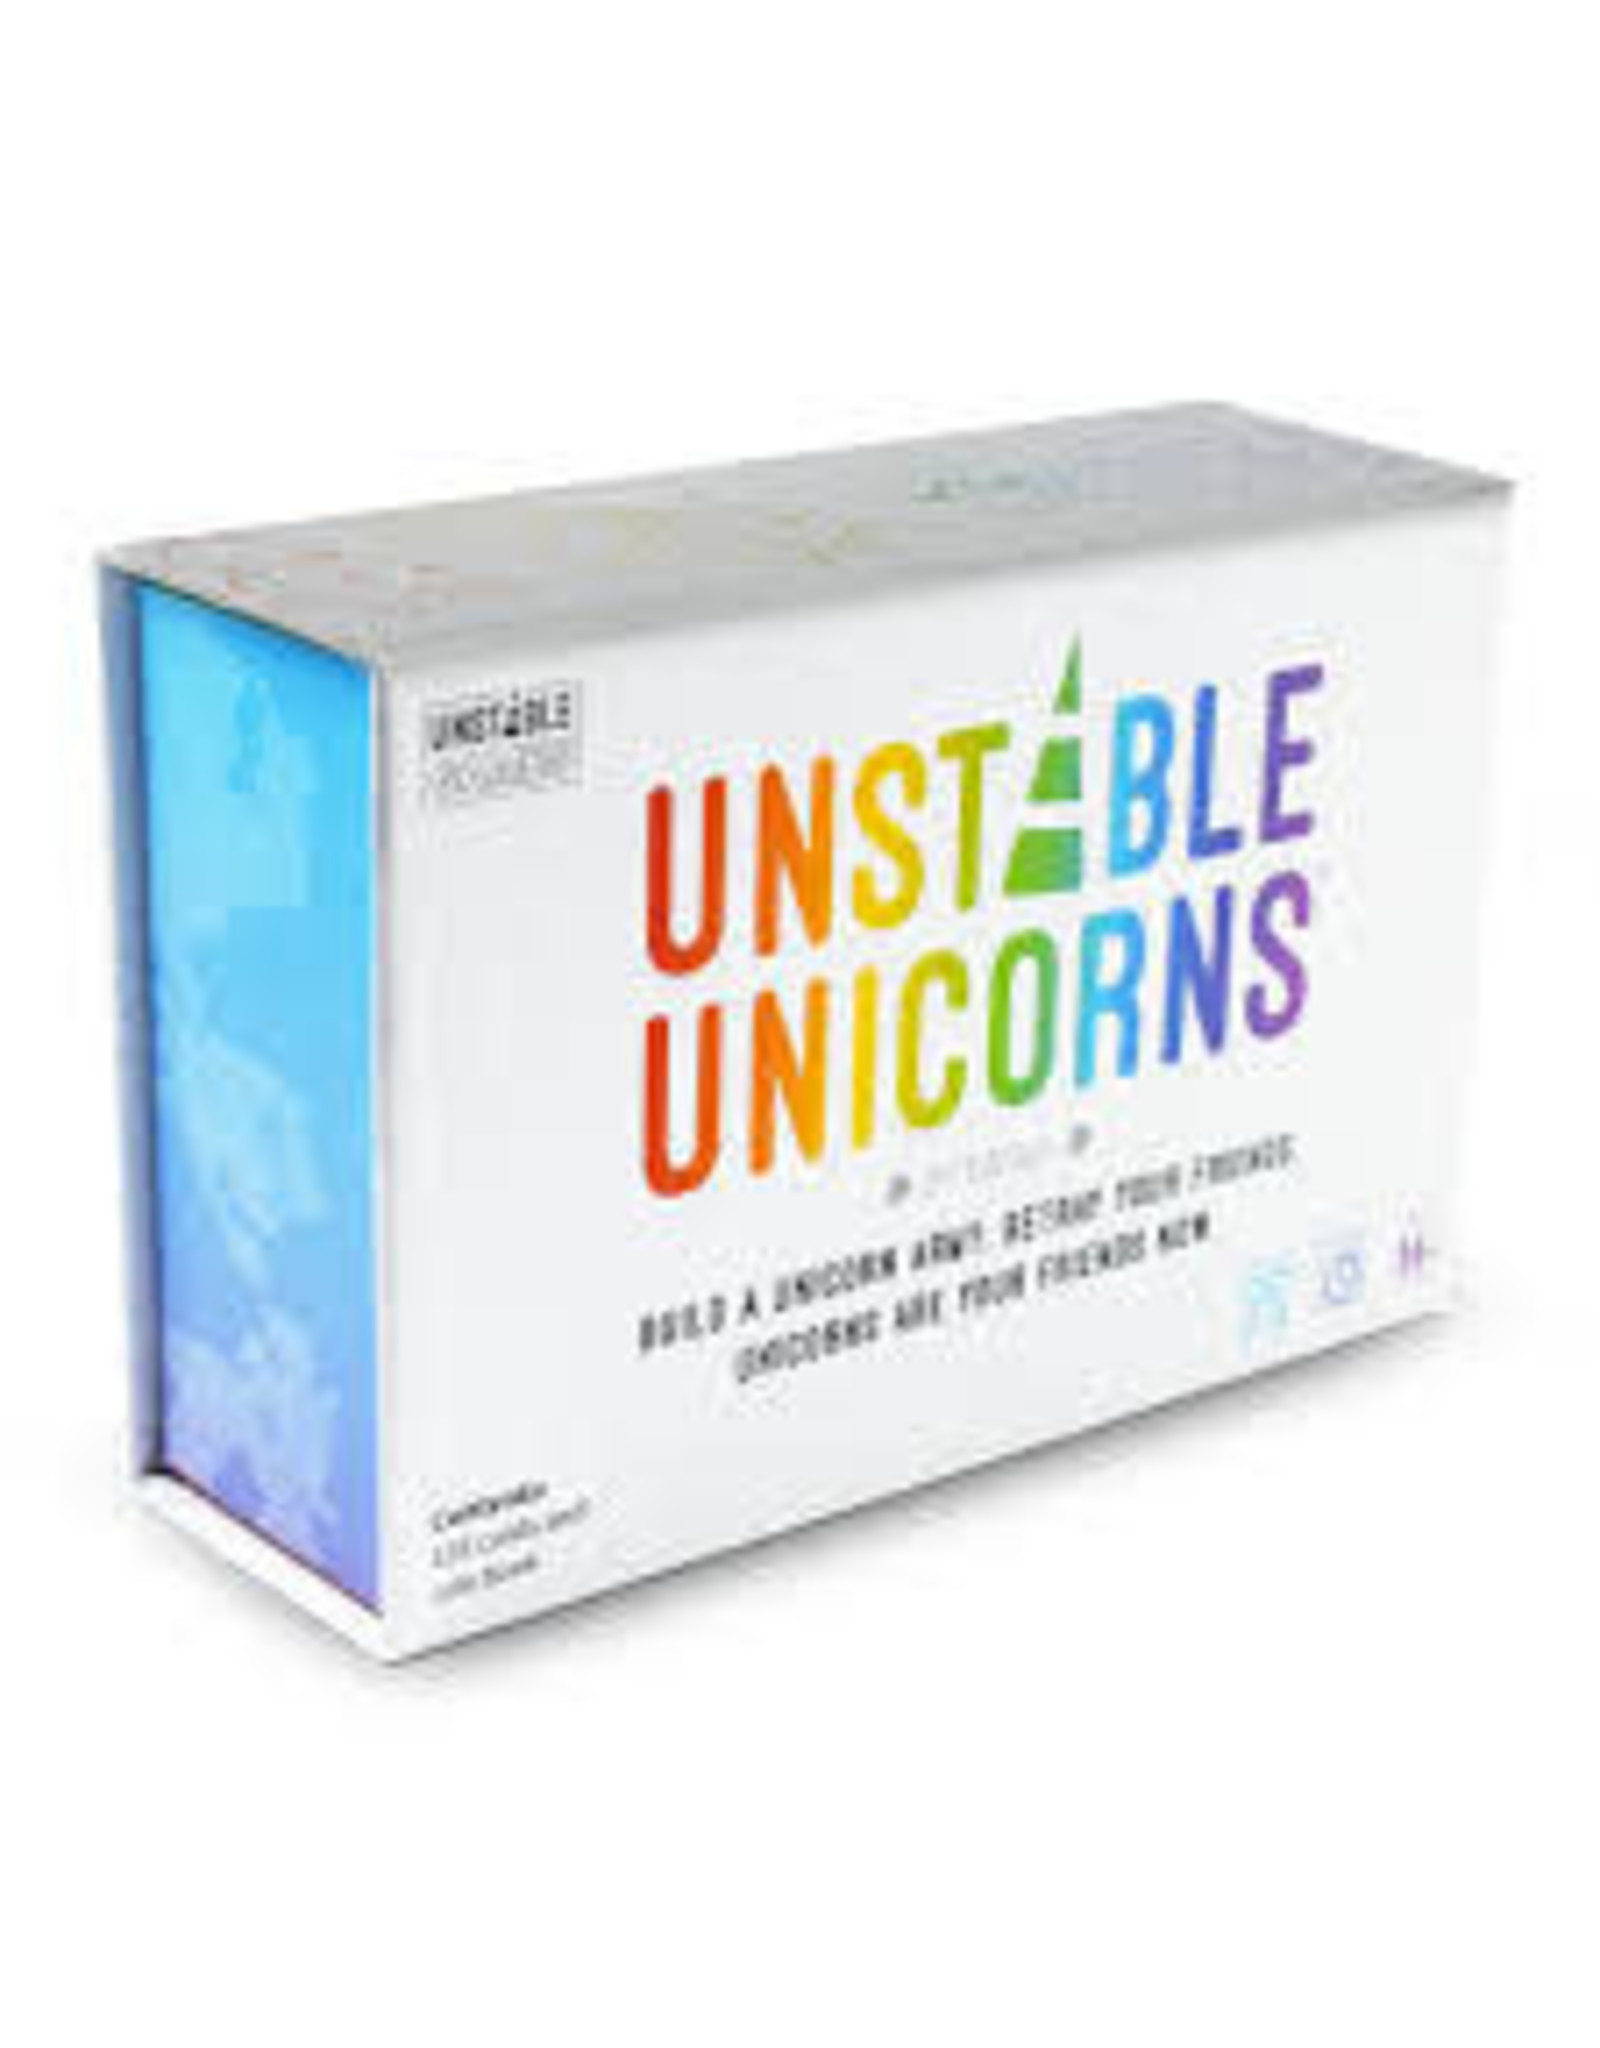 Teeturtle Unstable Unicorns